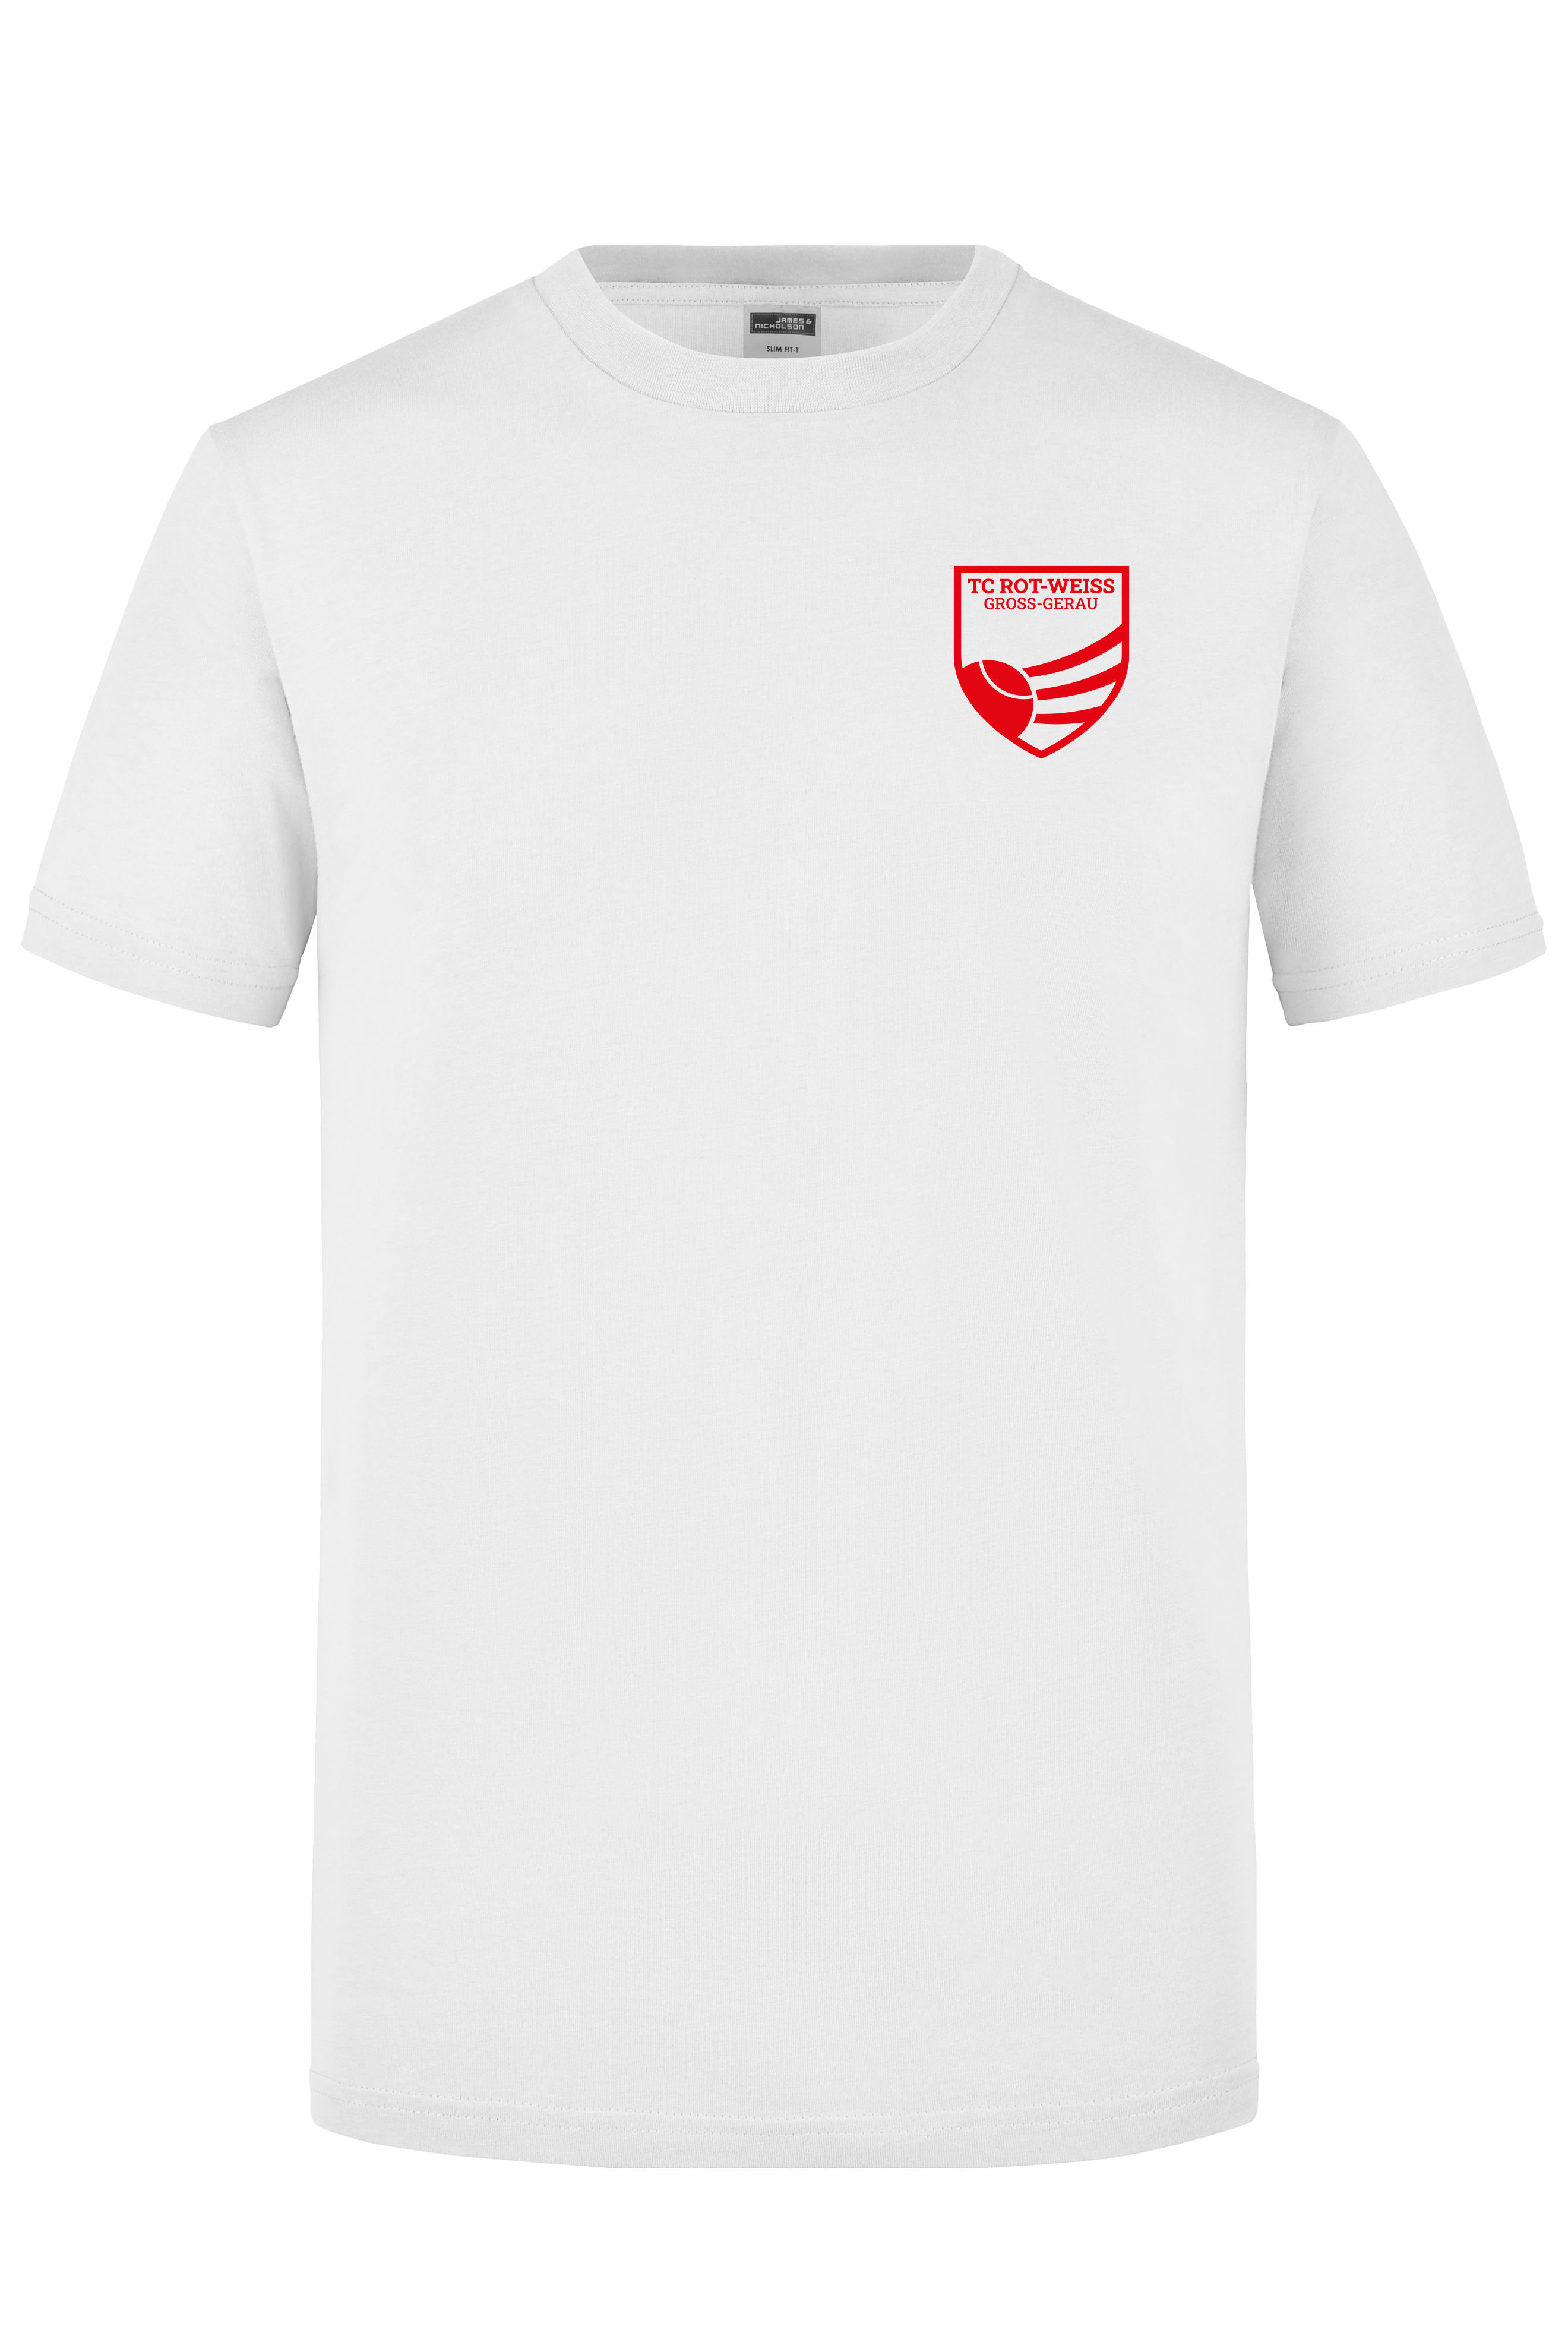 TC Rot-Weiss - Vorteil Dein Name - T-Shirt weiss